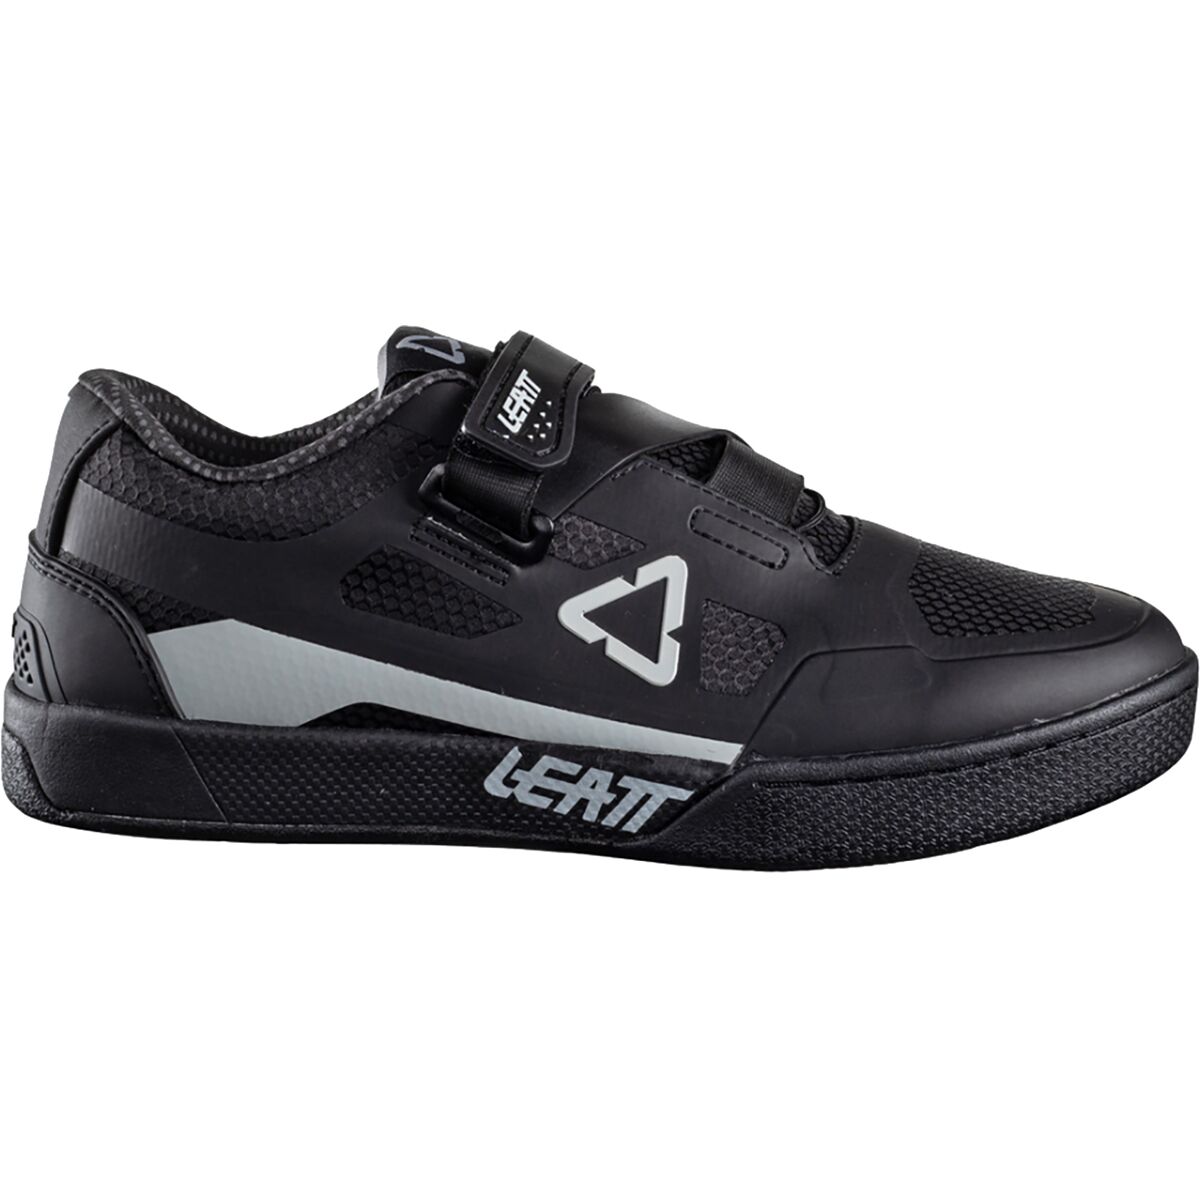 Leatt 5.0 Clip Shoe - Men's